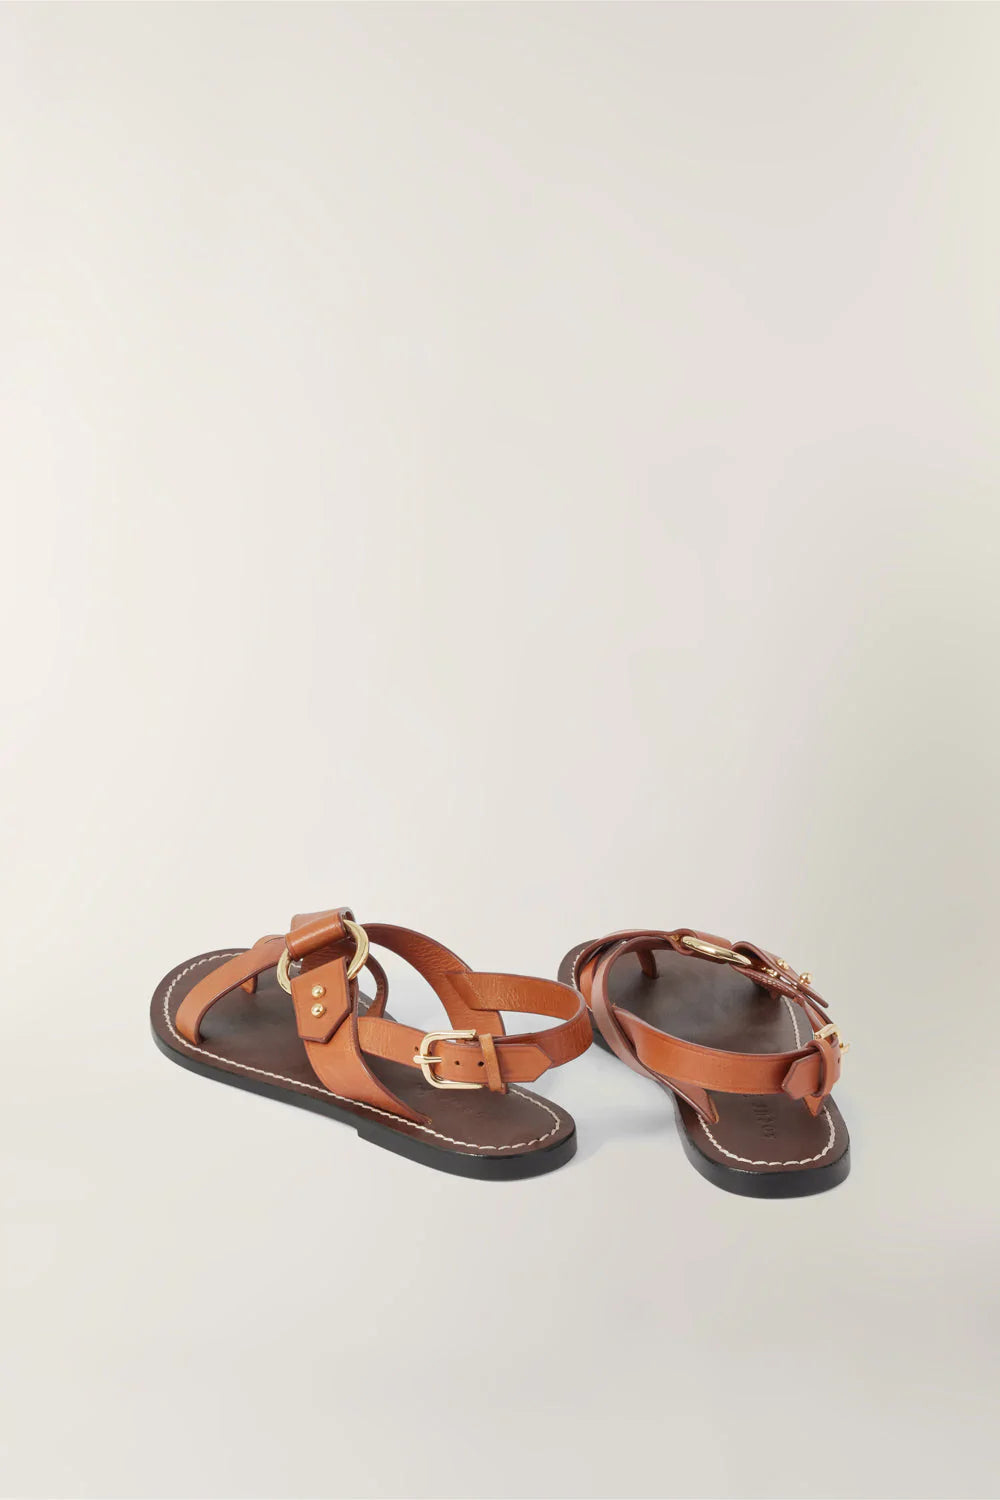 Sandals Florence Cognac - Soeur